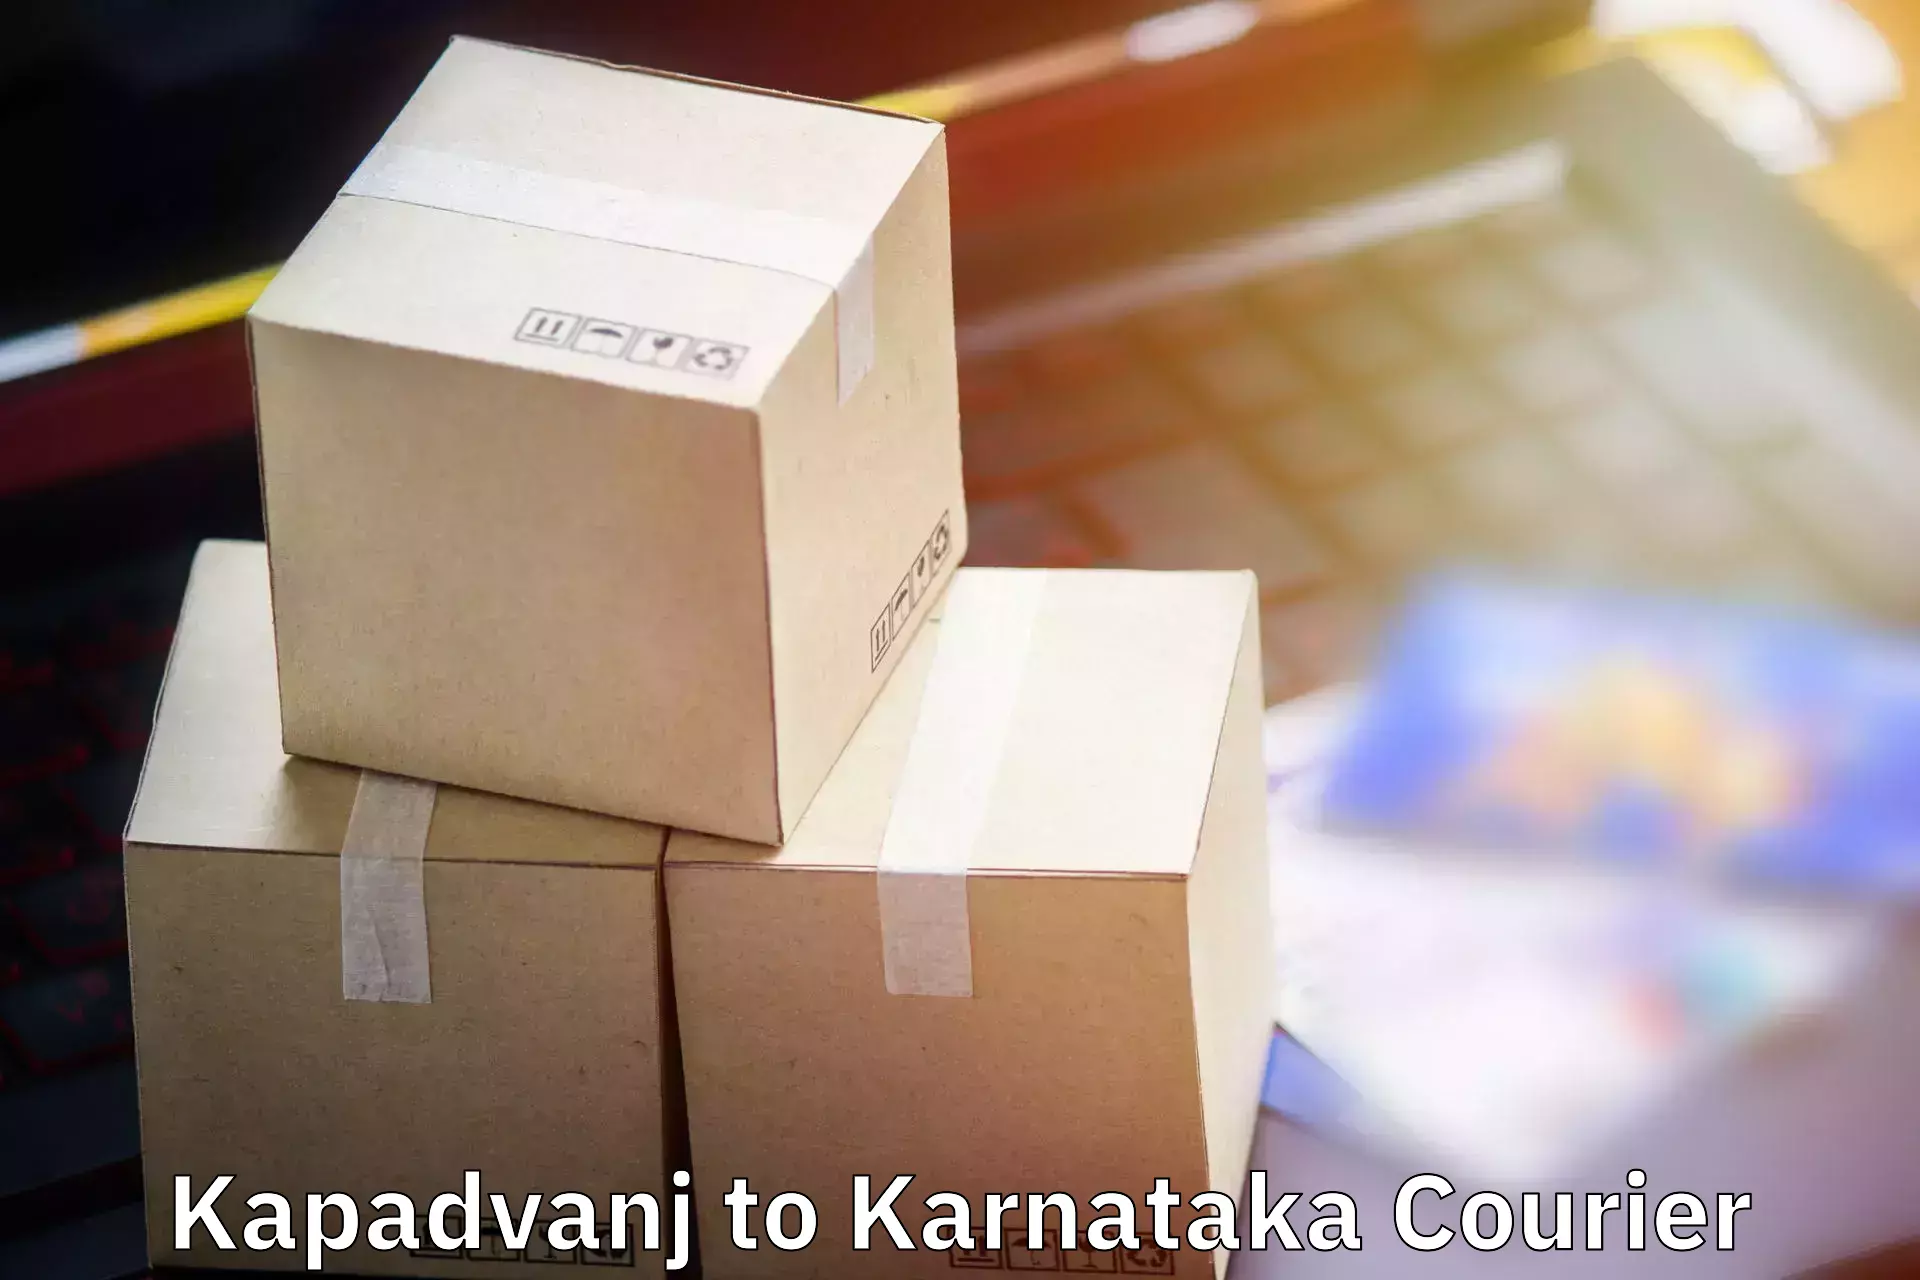 Luggage shipment processing Kapadvanj to Kanjarakatte